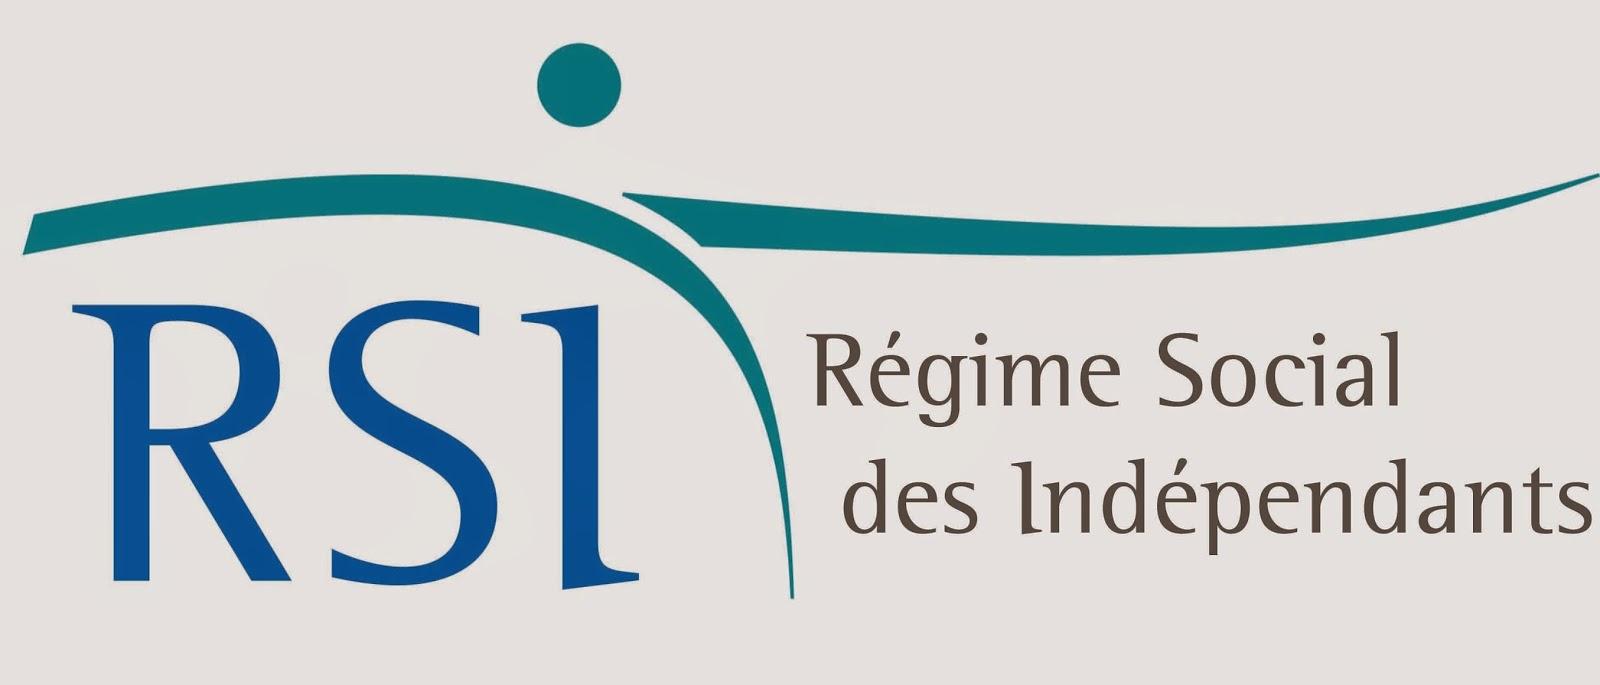 Interrogations concernant le RSI (Régime Social des Indépendants)